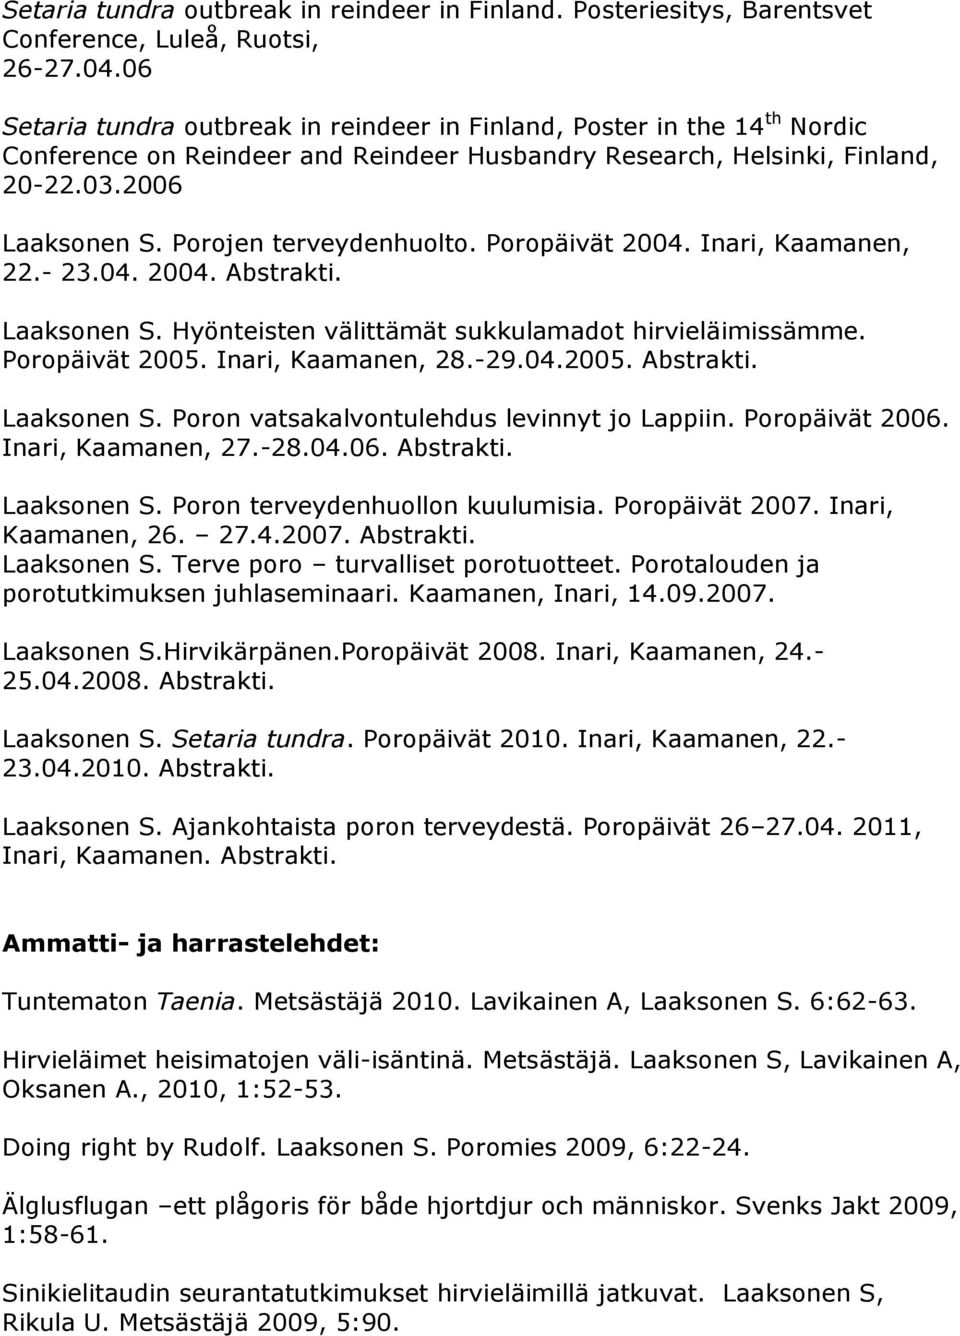 Porojen terveydenhuolto. Poropäivät 2004. Inari, Kaamanen, 22.- 23.04. 2004. Abstrakti. Laaksonen S. Hyönteisten välittämät sukkulamadot hirvieläimissämme. Poropäivät 2005. Inari, Kaamanen, 28.-29.04.2005. Abstrakti. Laaksonen S. Poron vatsakalvontulehdus levinnyt jo Lappiin.